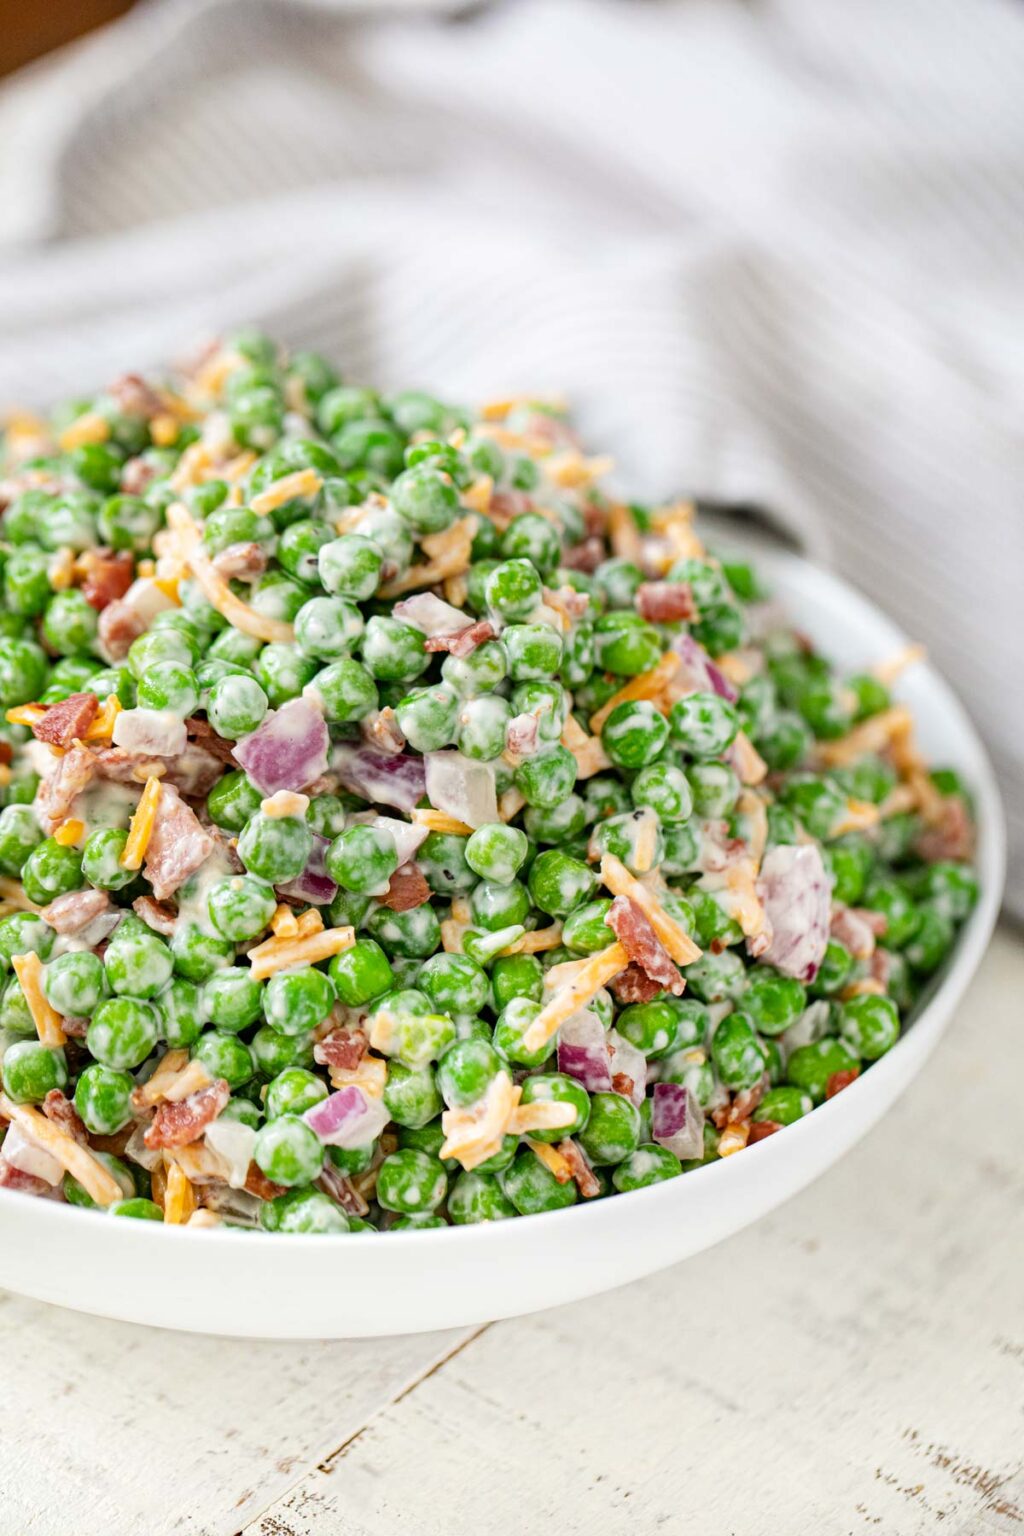 Healthy Pea Salad Recipe (w/ Turkey Bacon) - Cooking Made Healthy